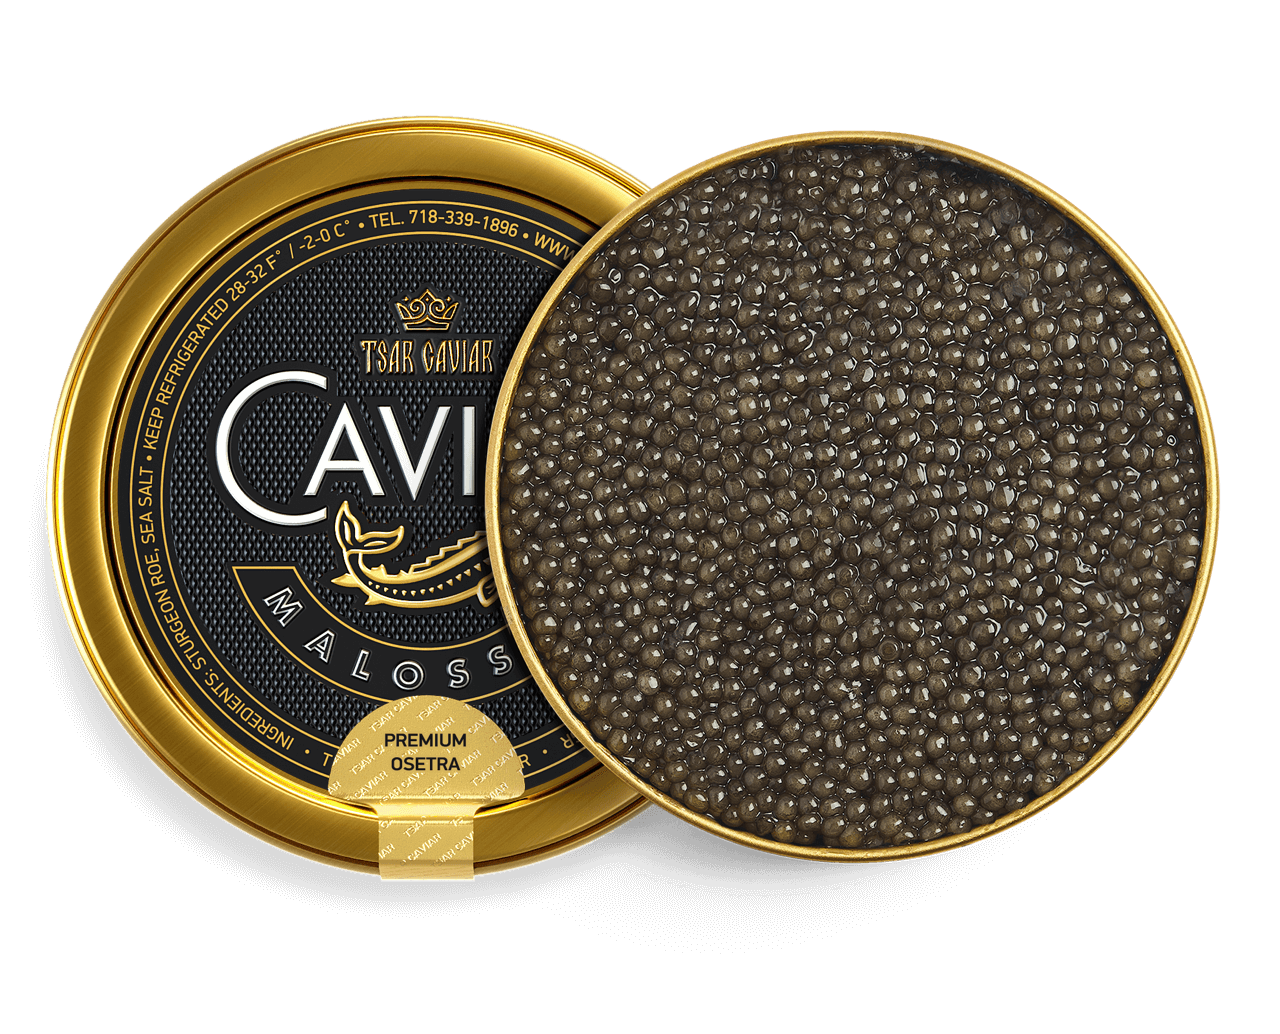 Premium Osetra Caviar – Tsar Caviar